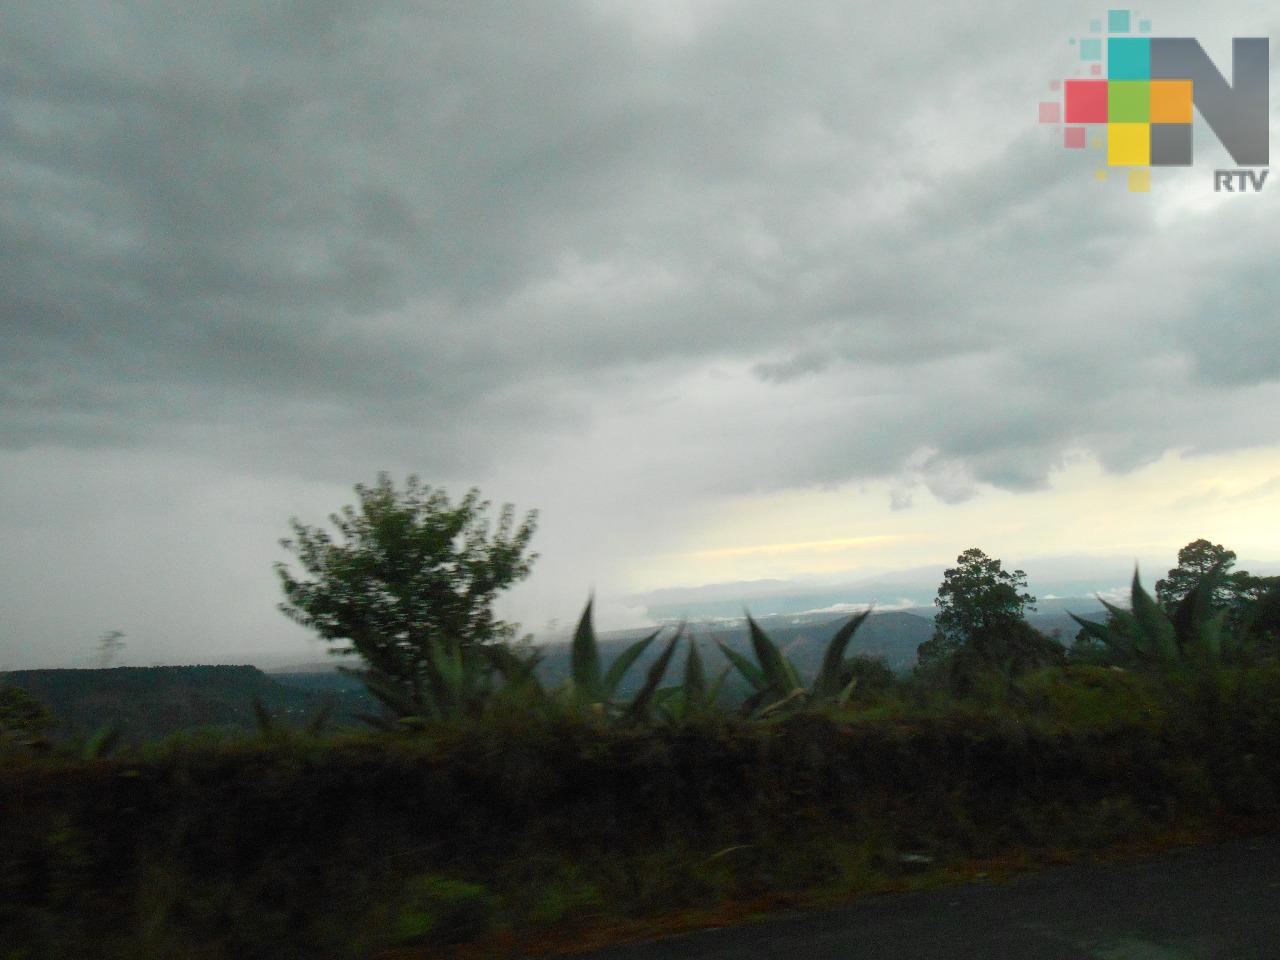 Cielo mayormente nublado en gran parte de estado de Veracruz